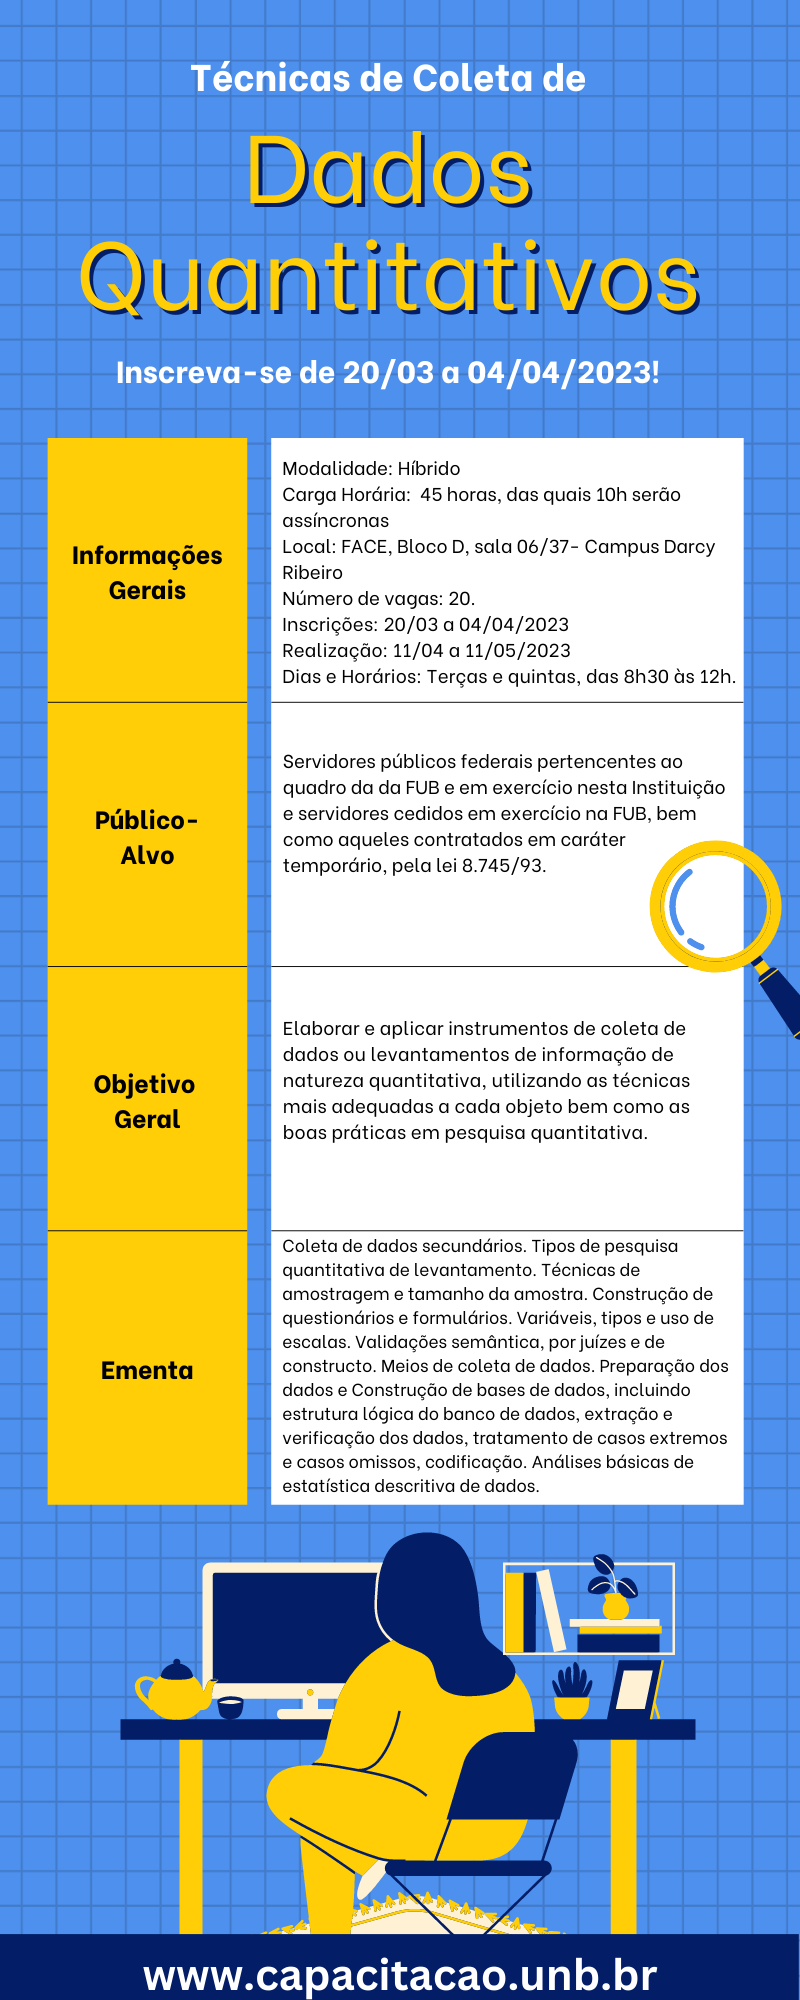 Técnicas_de_Coleta_de_Dados_Quantitativos_-_Inscrições_Prorrogadas.png